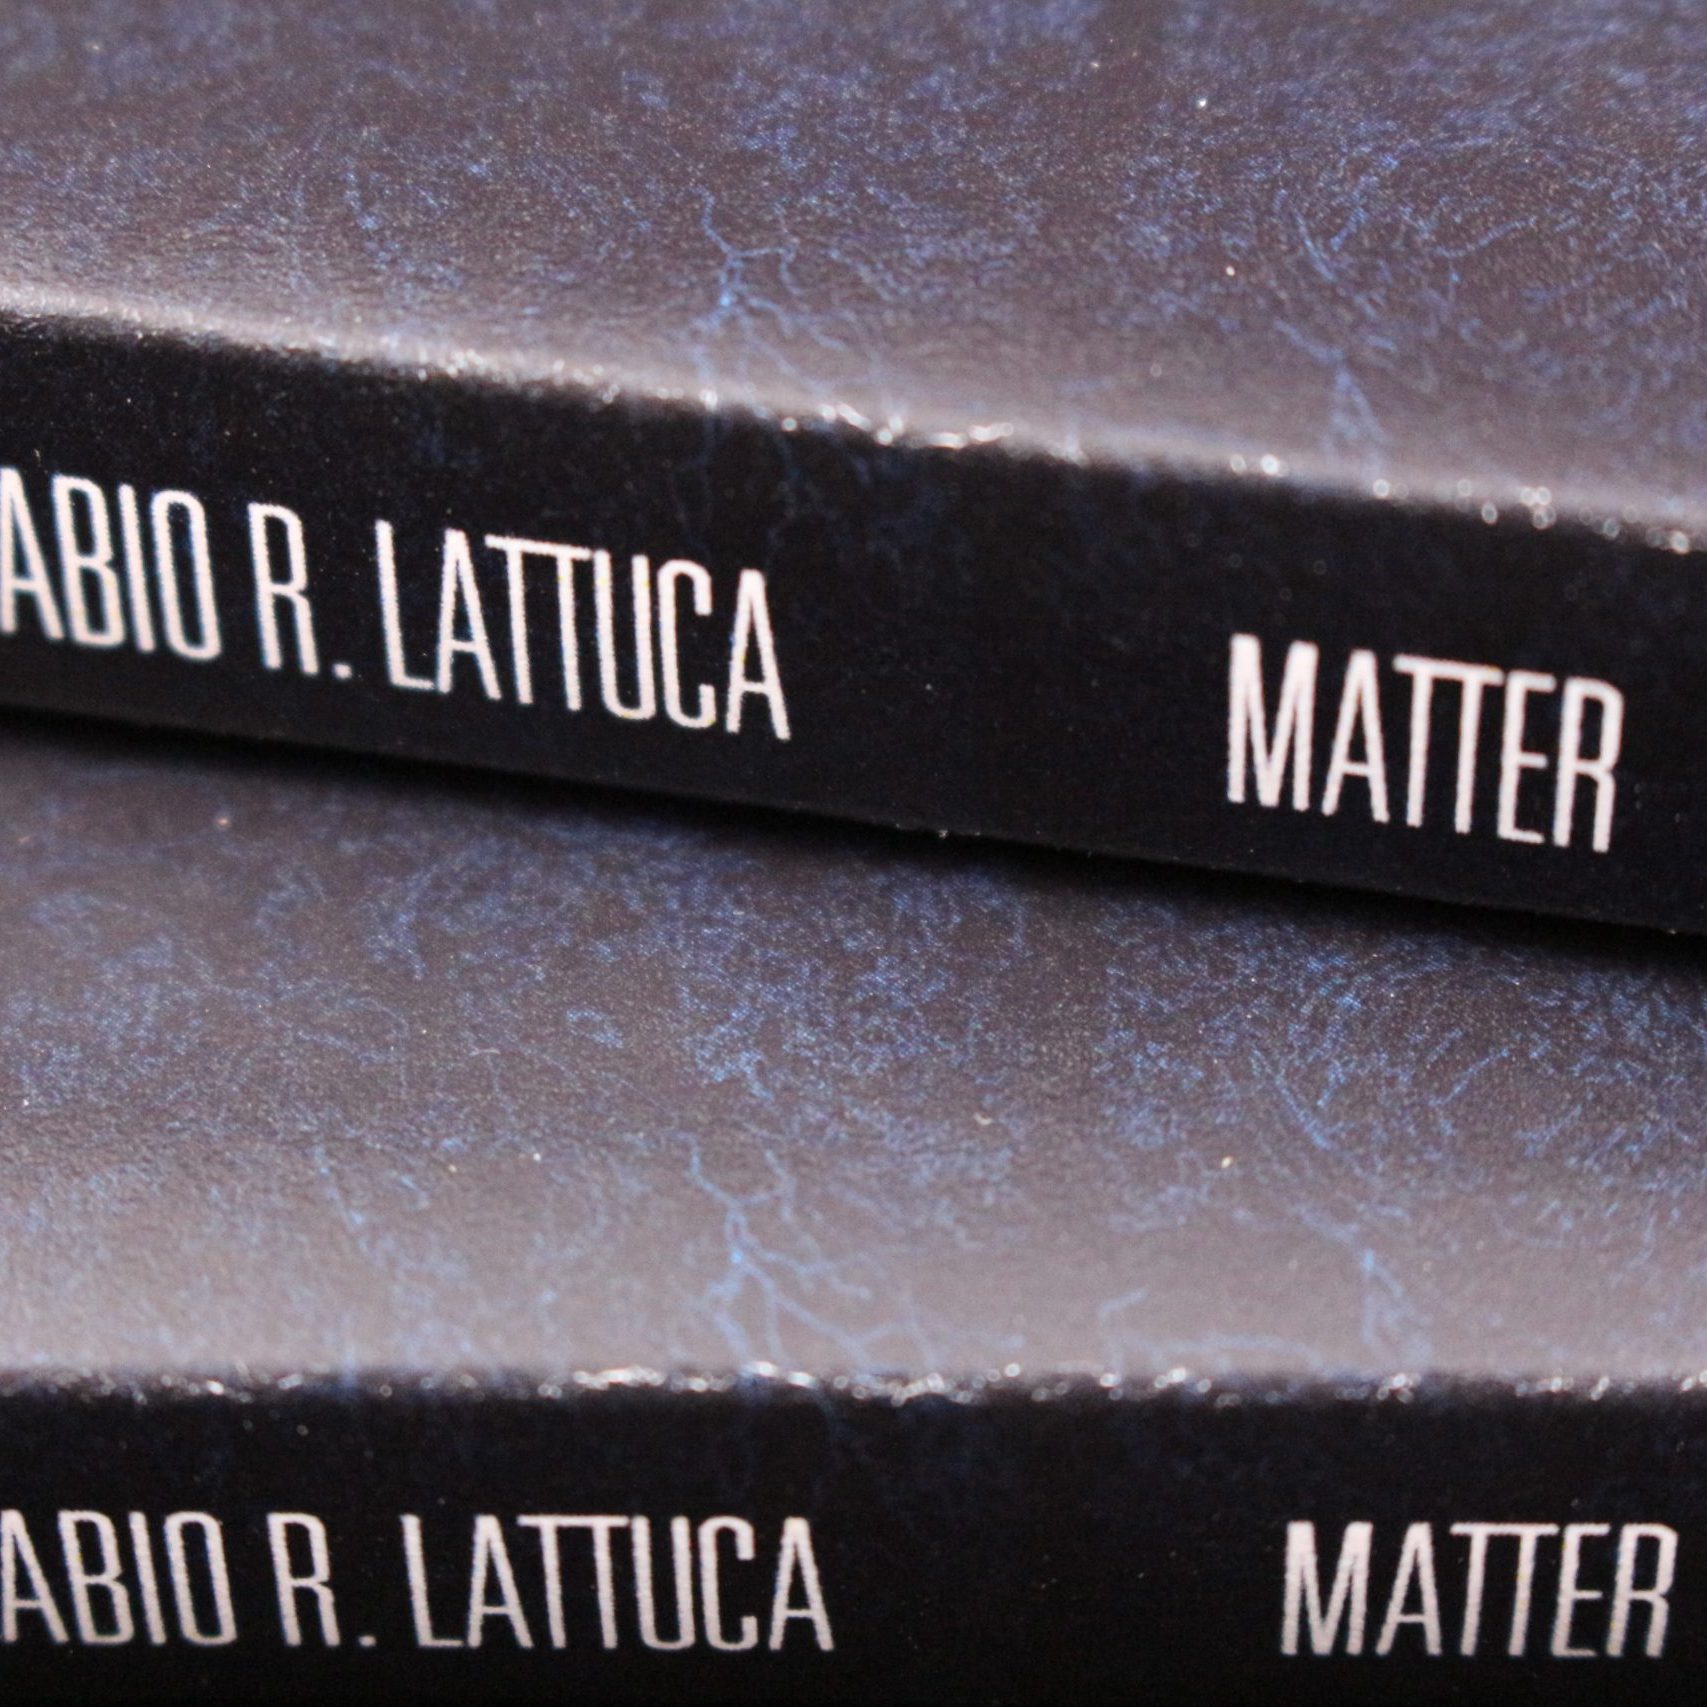 FABIO R. LATTUCA - MATTER 5